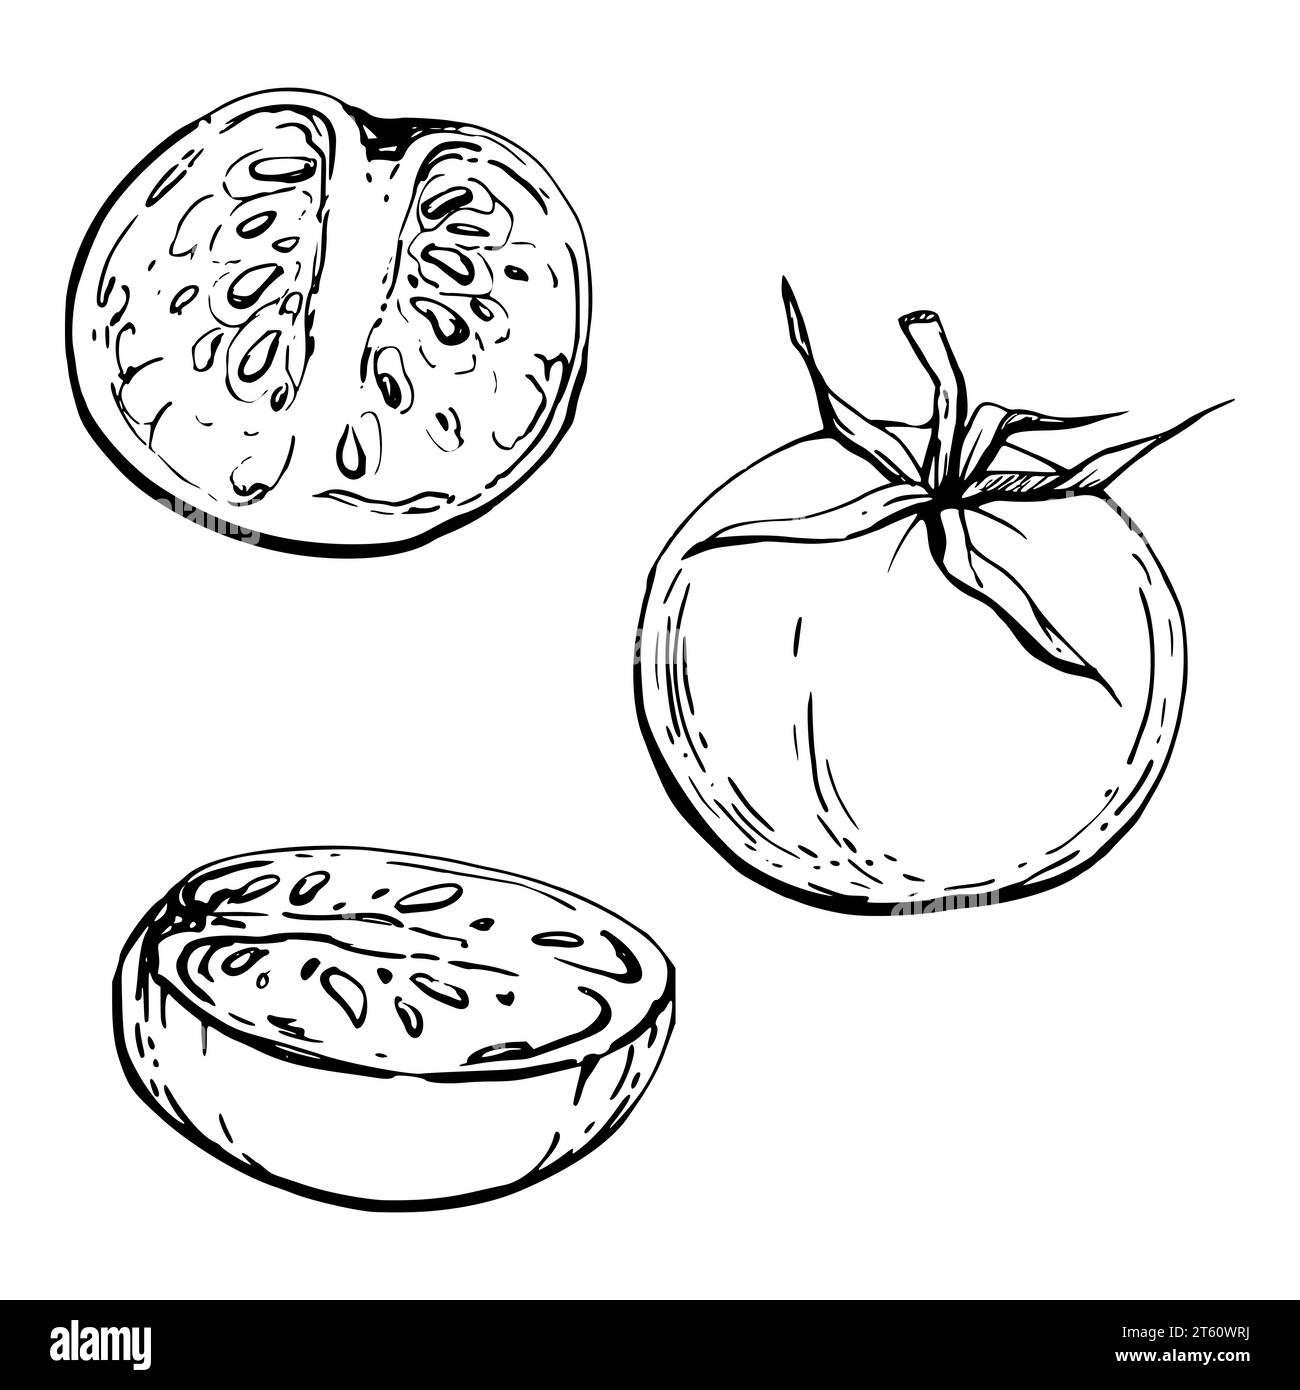 Illustrazione a inchiostro vettoriale disegnata a mano. Pomodoro verdura, integrale e mezzo, prodotto agricolo vegano ecologico. Oggetto singolo isolato su bianco. Progettazione Illustrazione Vettoriale